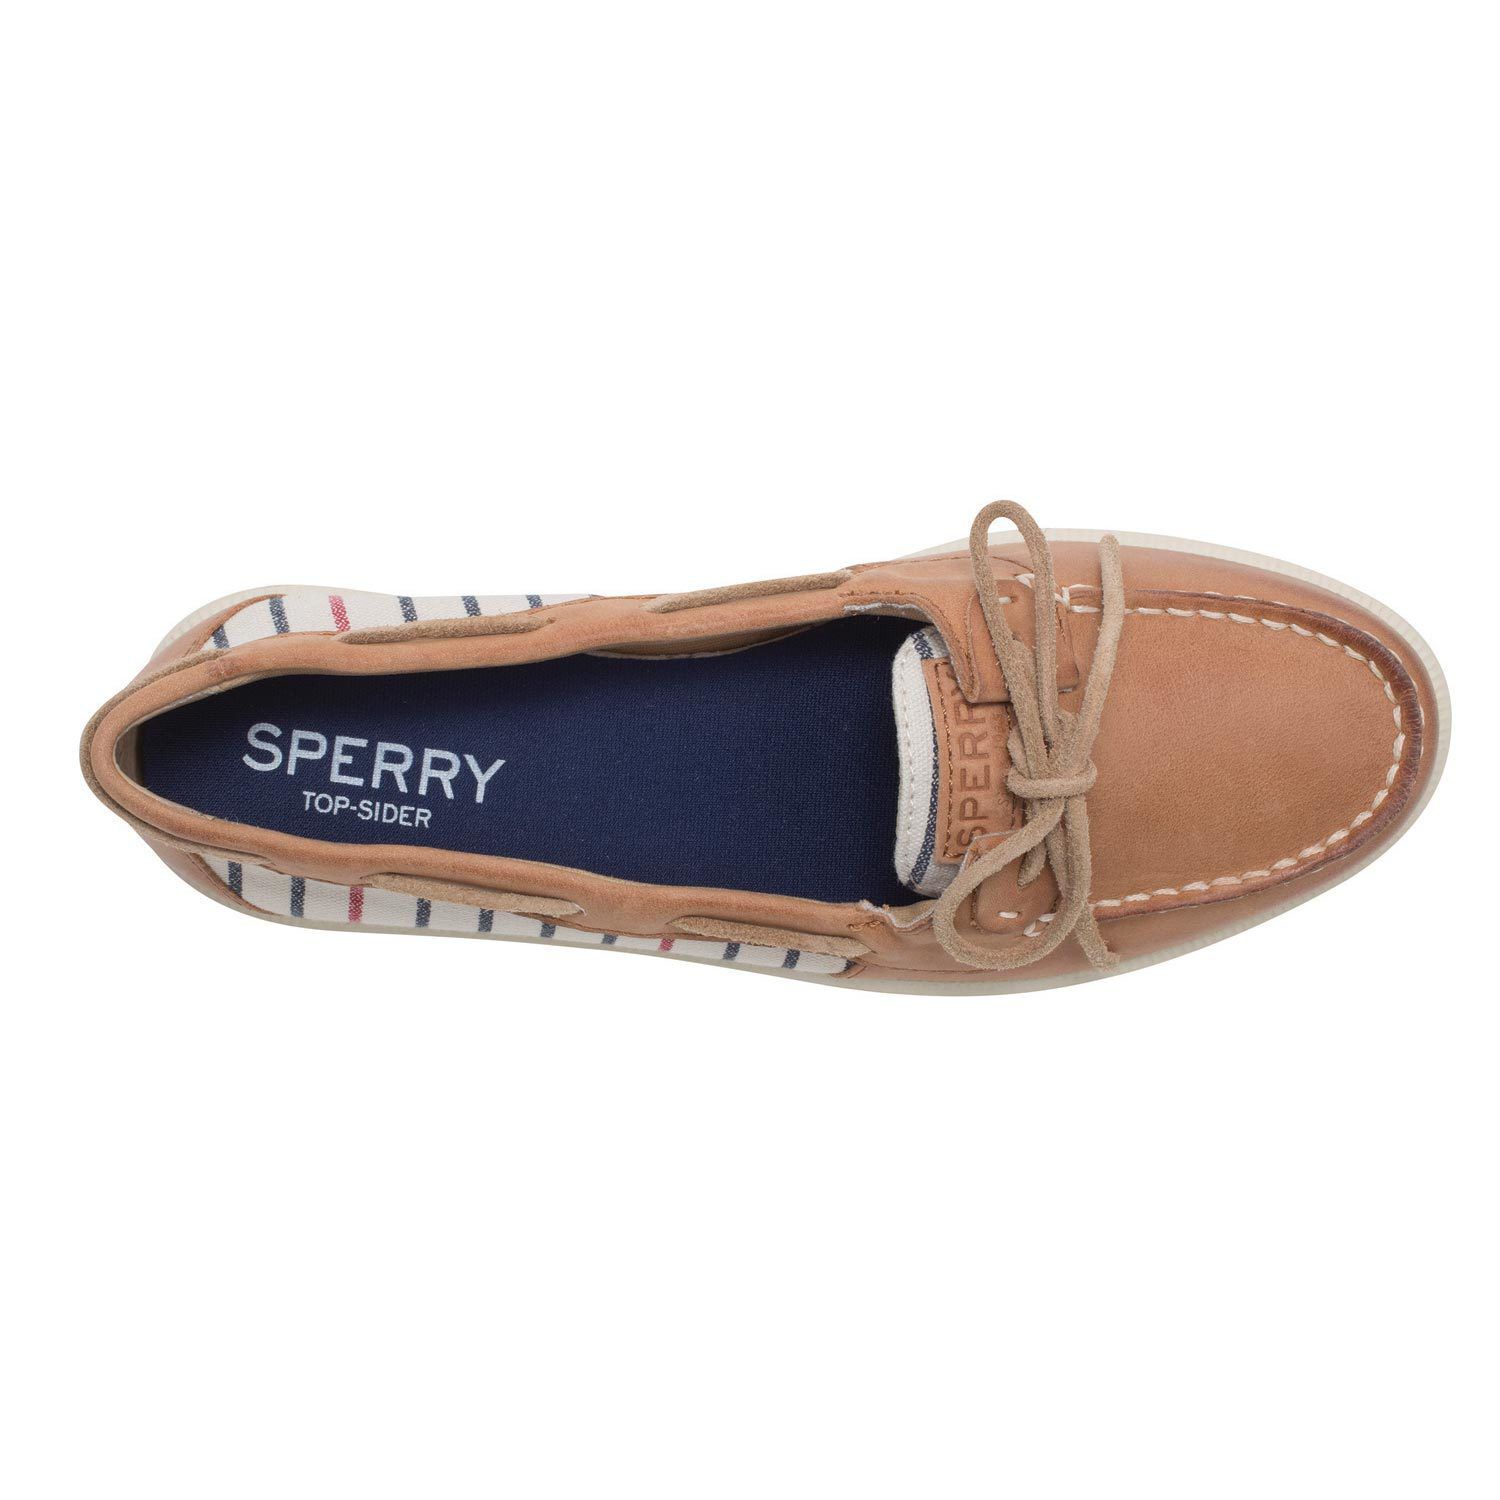 Sperry Top-Sider Women's Oasis Loft Slip-On Boat Shoes Tan Stripe 